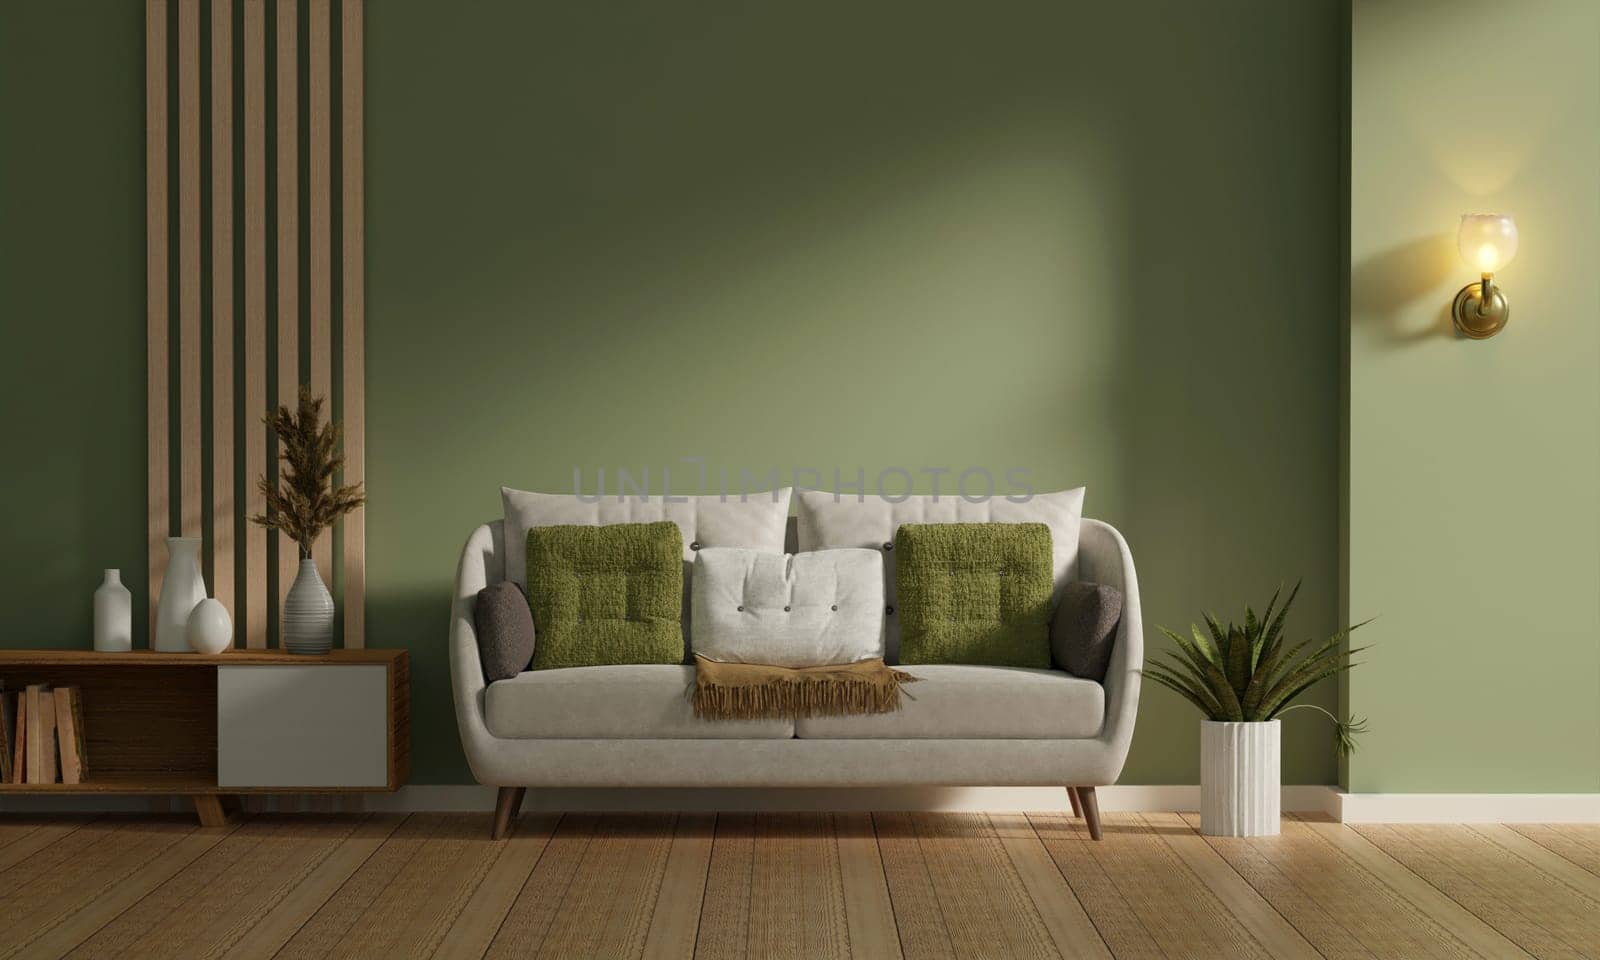 Blank poster frame mock up in living room interior, beige sofa, modern living room interior background, 3d rendering illustration.